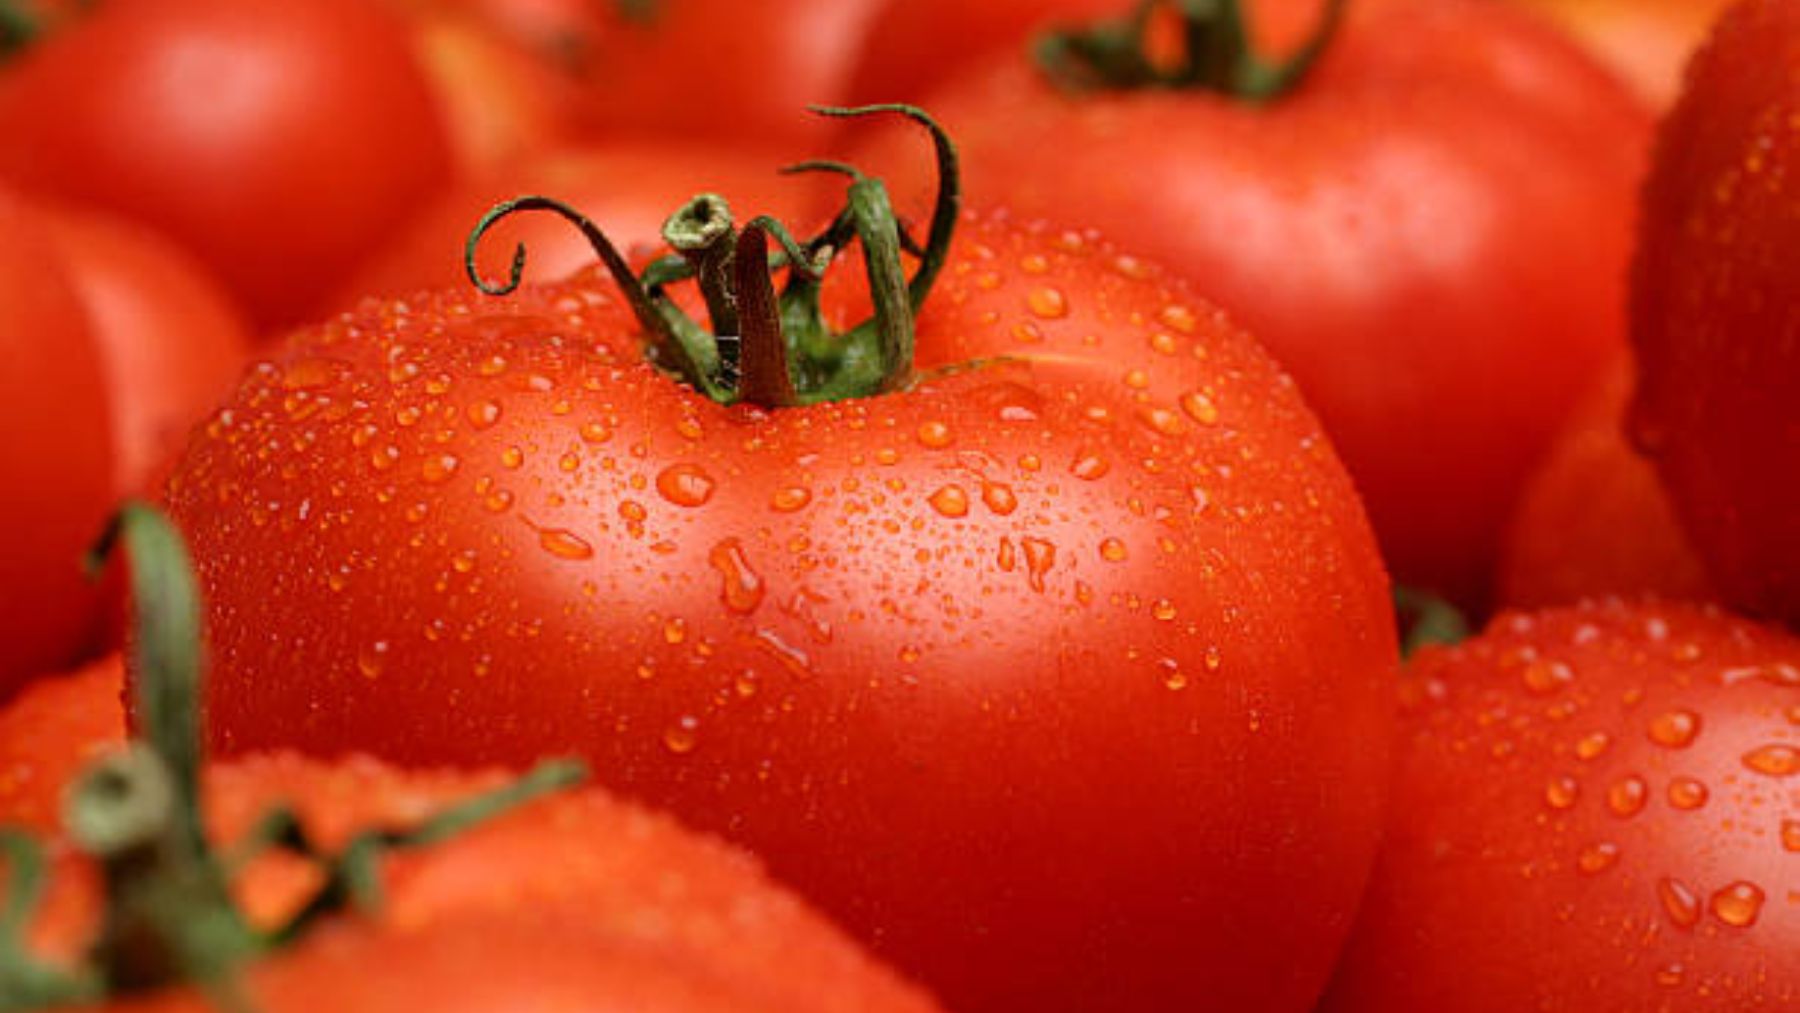 En lo que debes fijarte para saber si el tomate está en buen estado